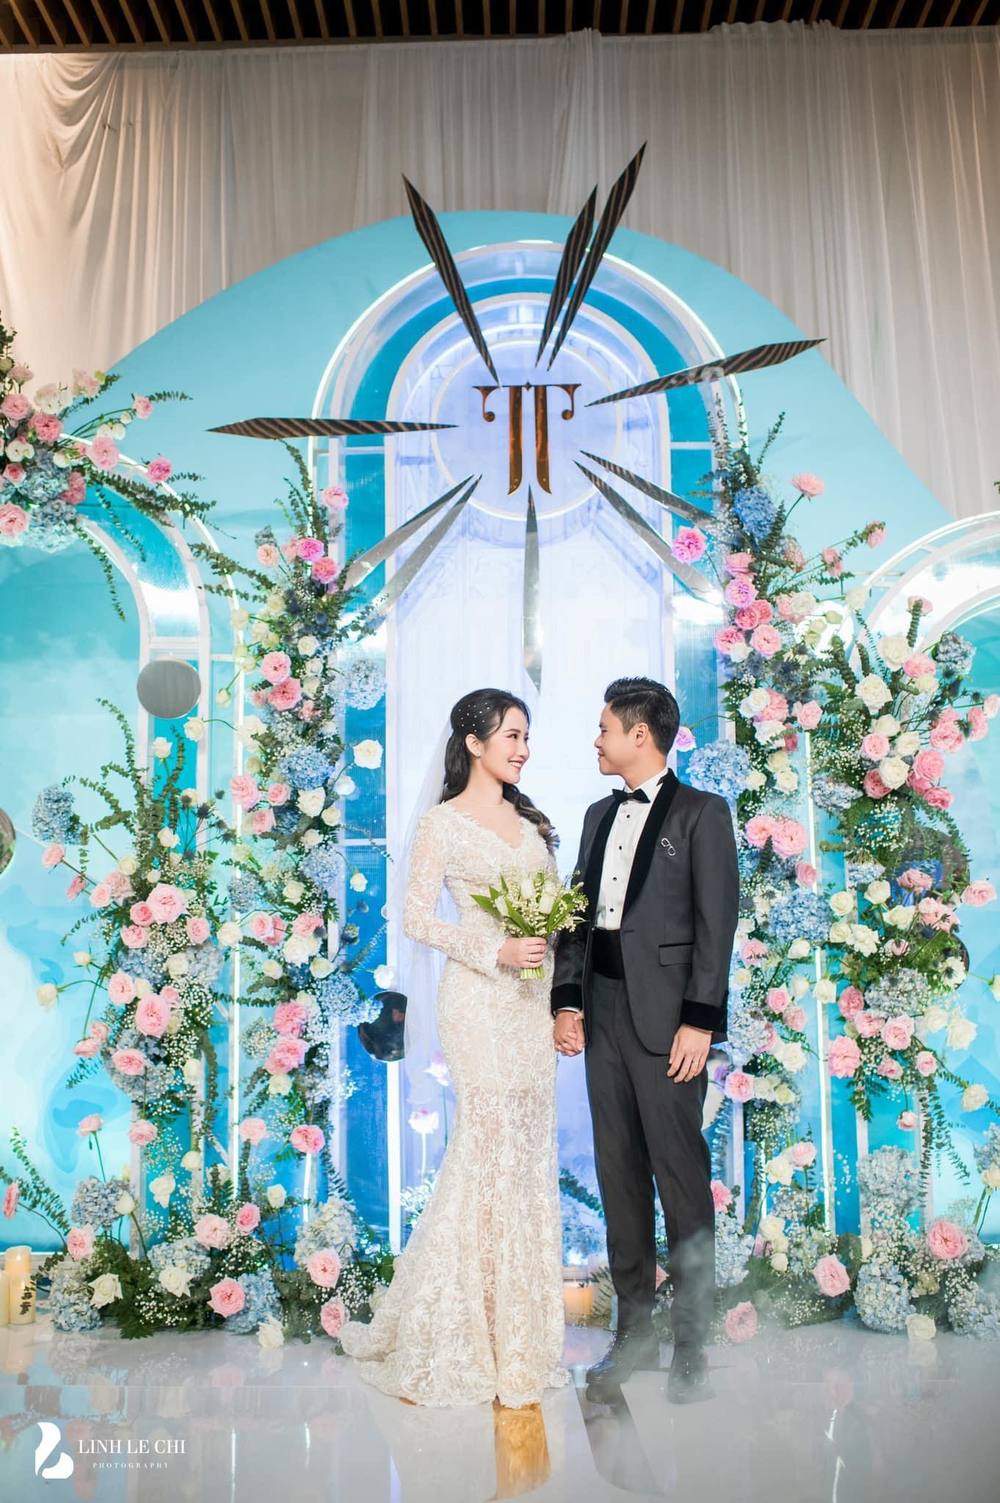  
Đám cưới hoành tráng của cặp đôi Phan Thành - Primmy Trương.